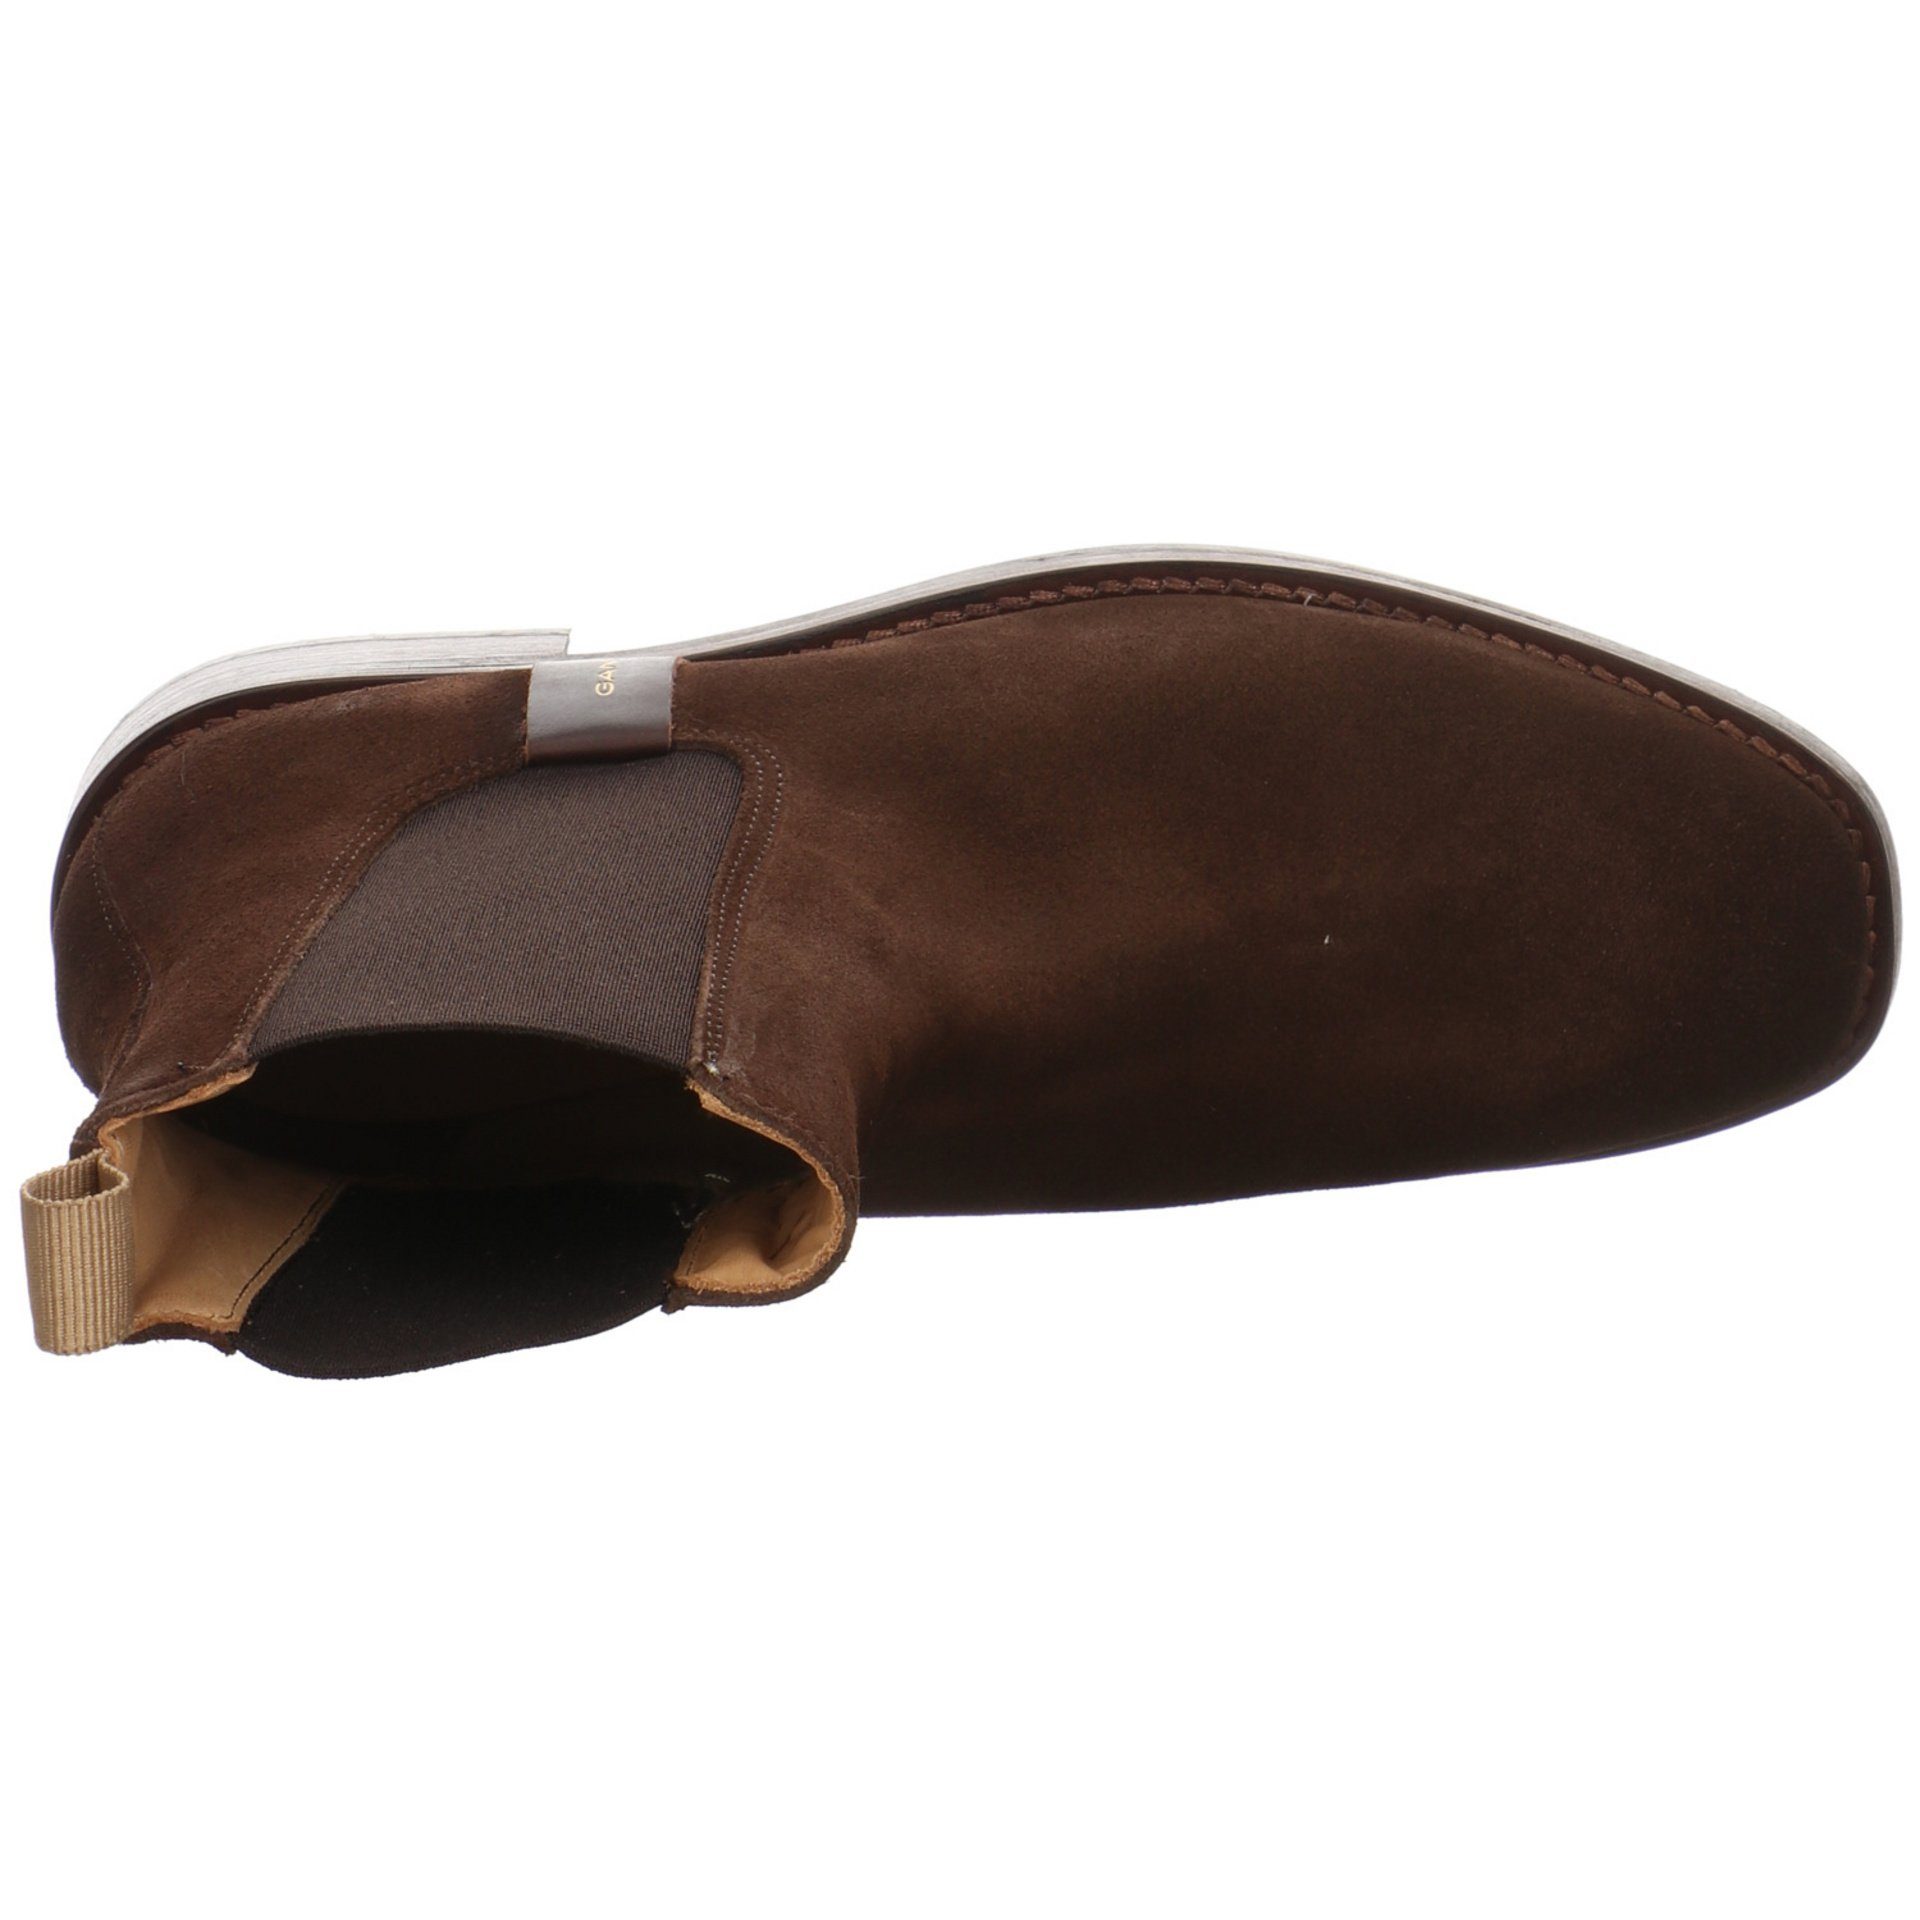 Chelsea dark Leder-/Textilkombination Gant Damen Schuhe Stiefelette Stiefeletten brown FAYY Boots